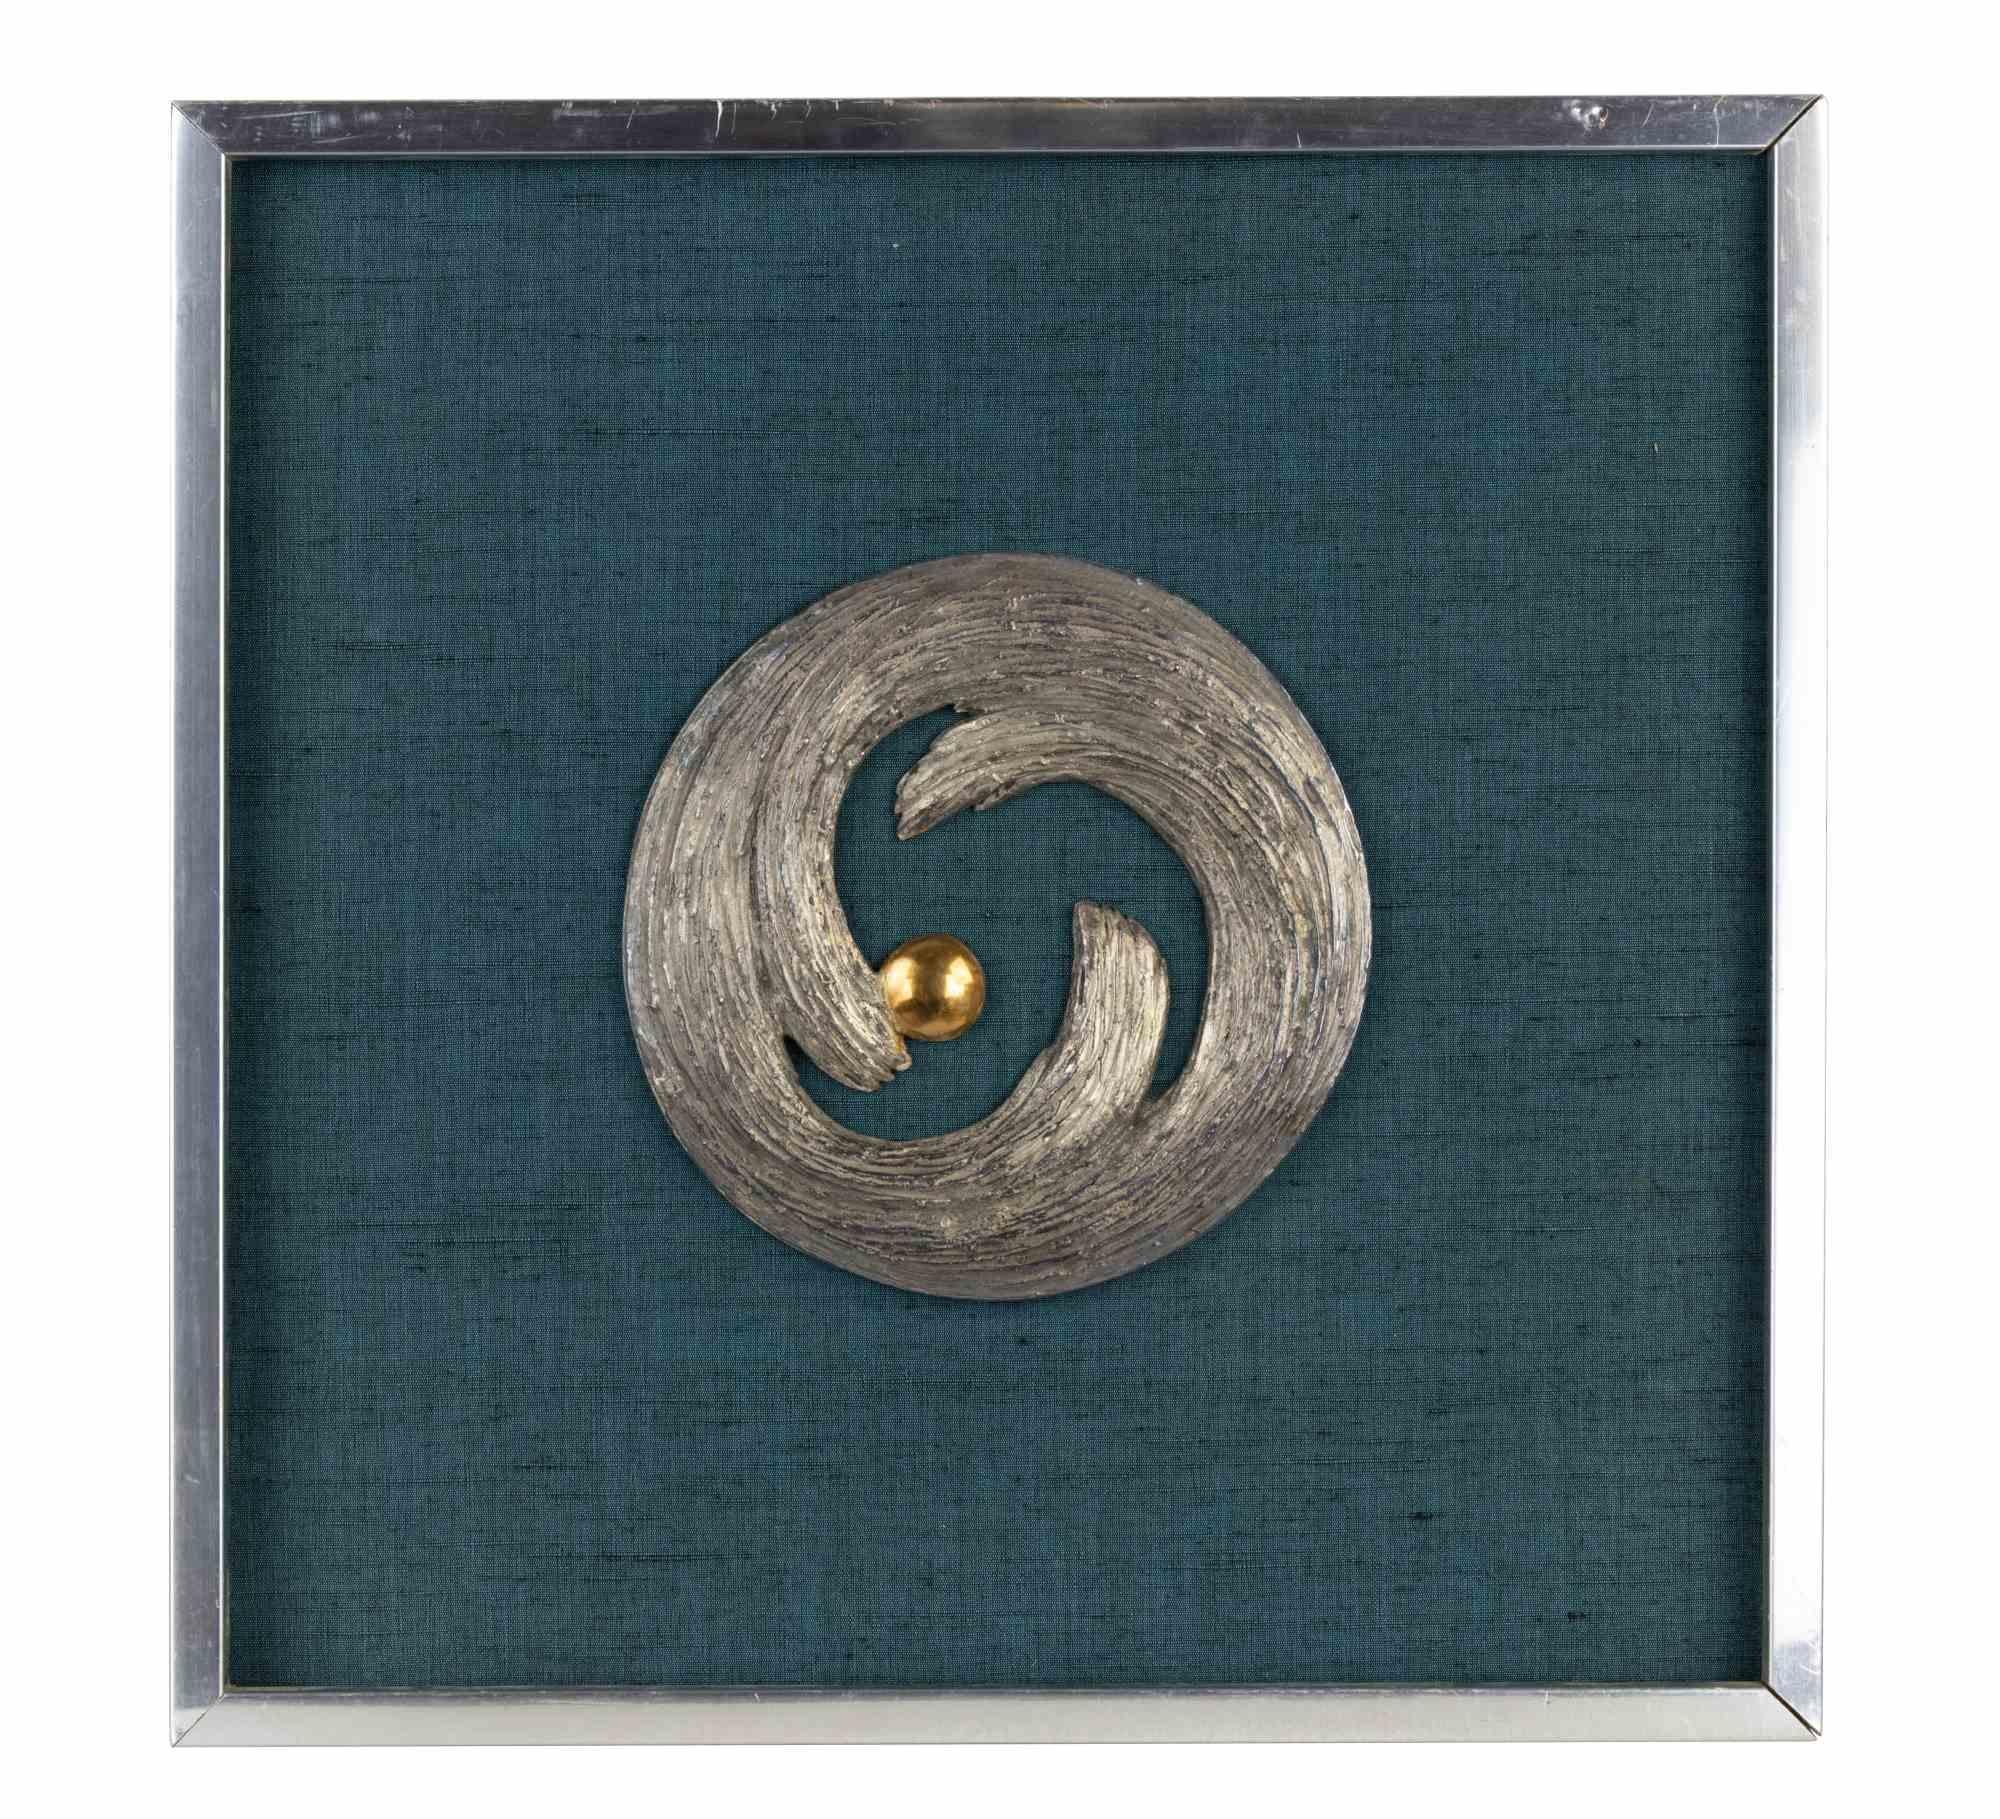 Der Kreis des Lebens ist ein zeitgenössisches Kunstwerk, das von einem Künstler des späten 20. Jahrhunderts geschaffen wurde.

Bronzerelief auf grünem Hintergrund

Inklusive Rahmen